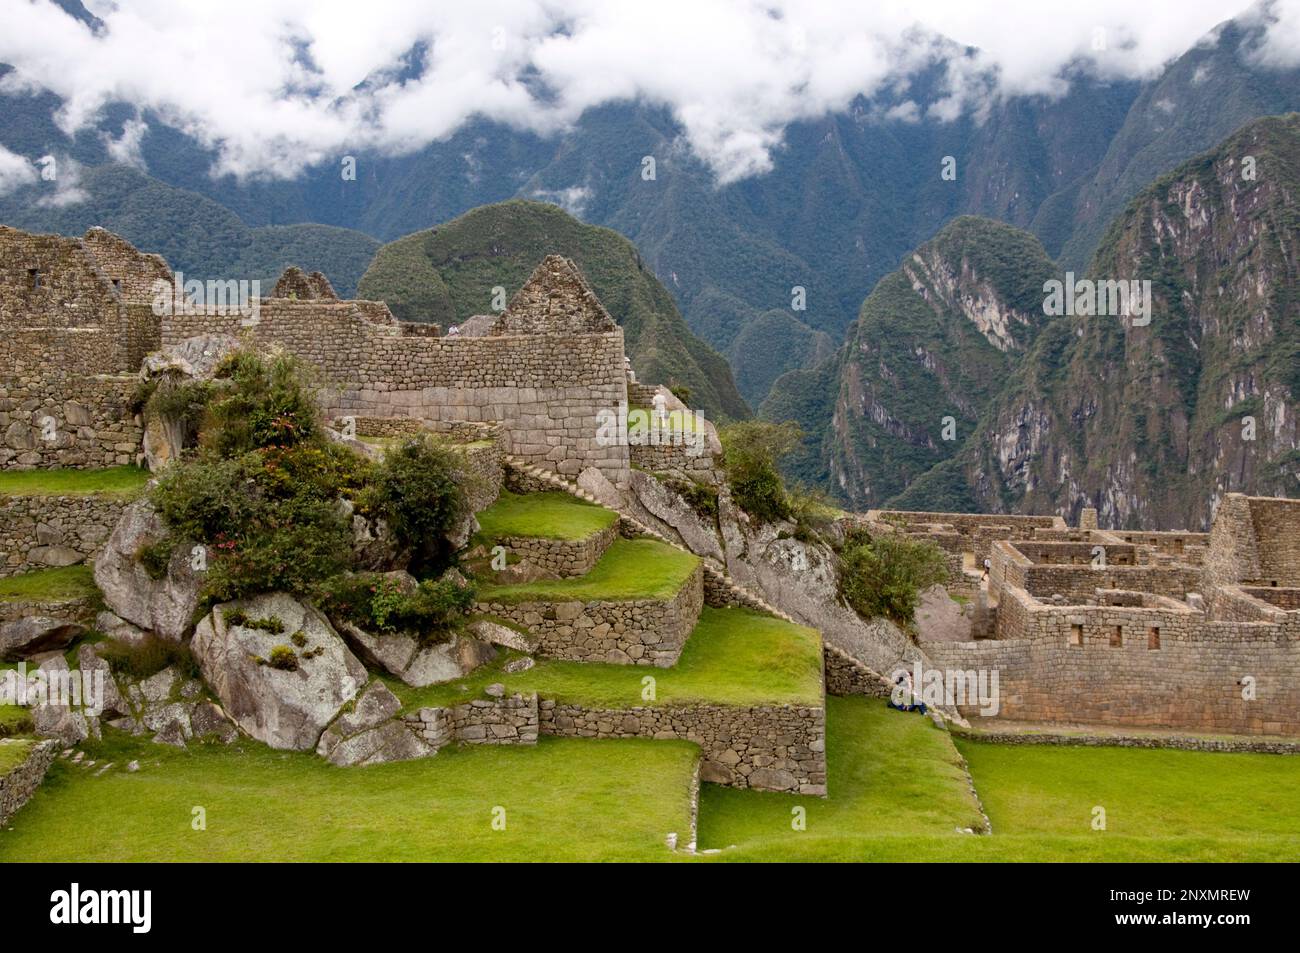 Machu Picchu e terrazze agricole, rovine della città sacra Inca, città perduta di Inkas, cusco, perù. Foto Stock